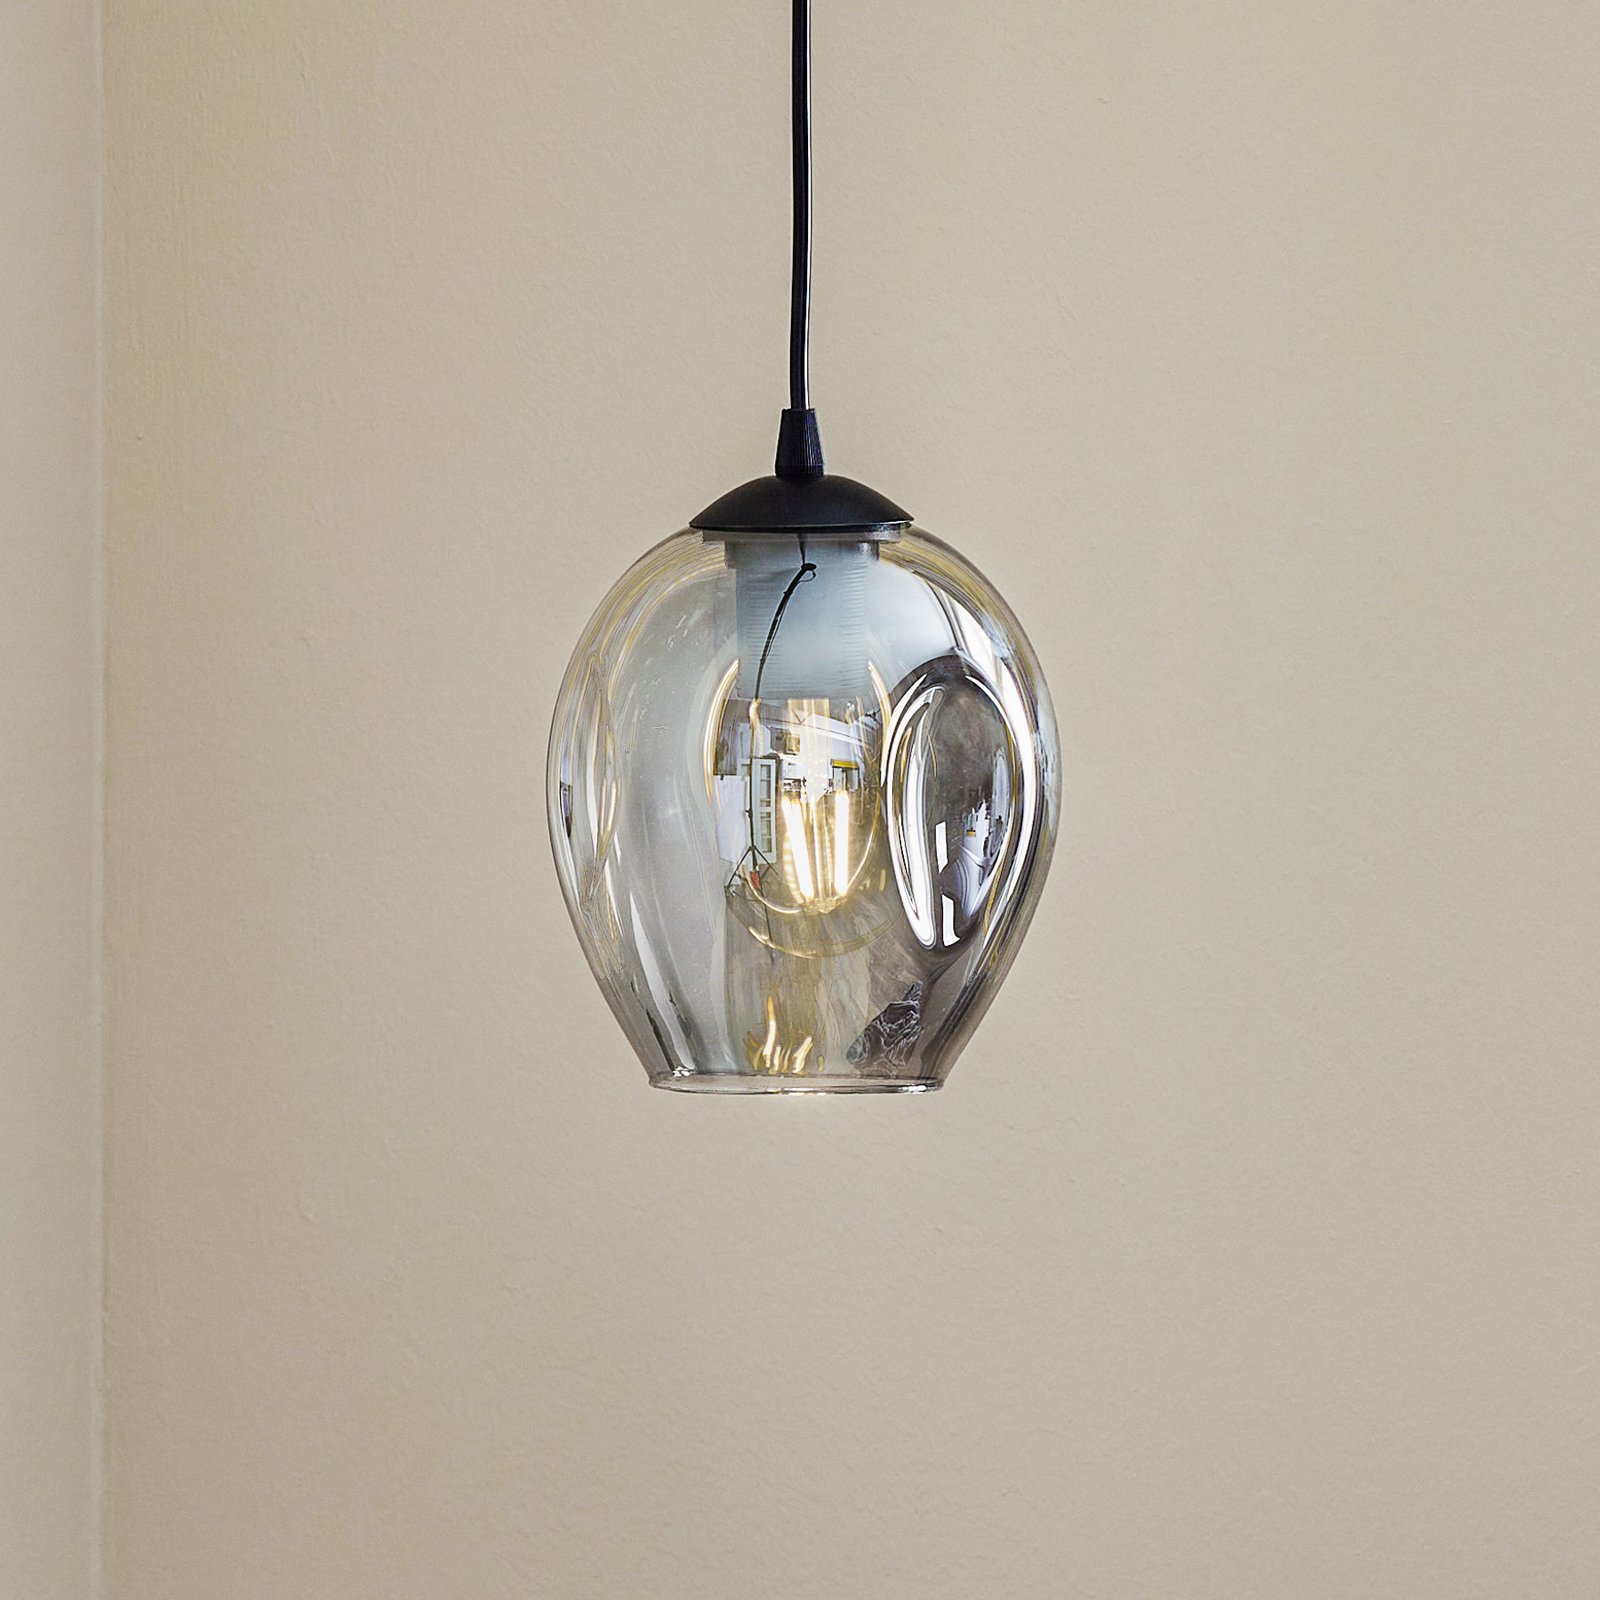 Starla pendant lamp one-bulb, graphite glass